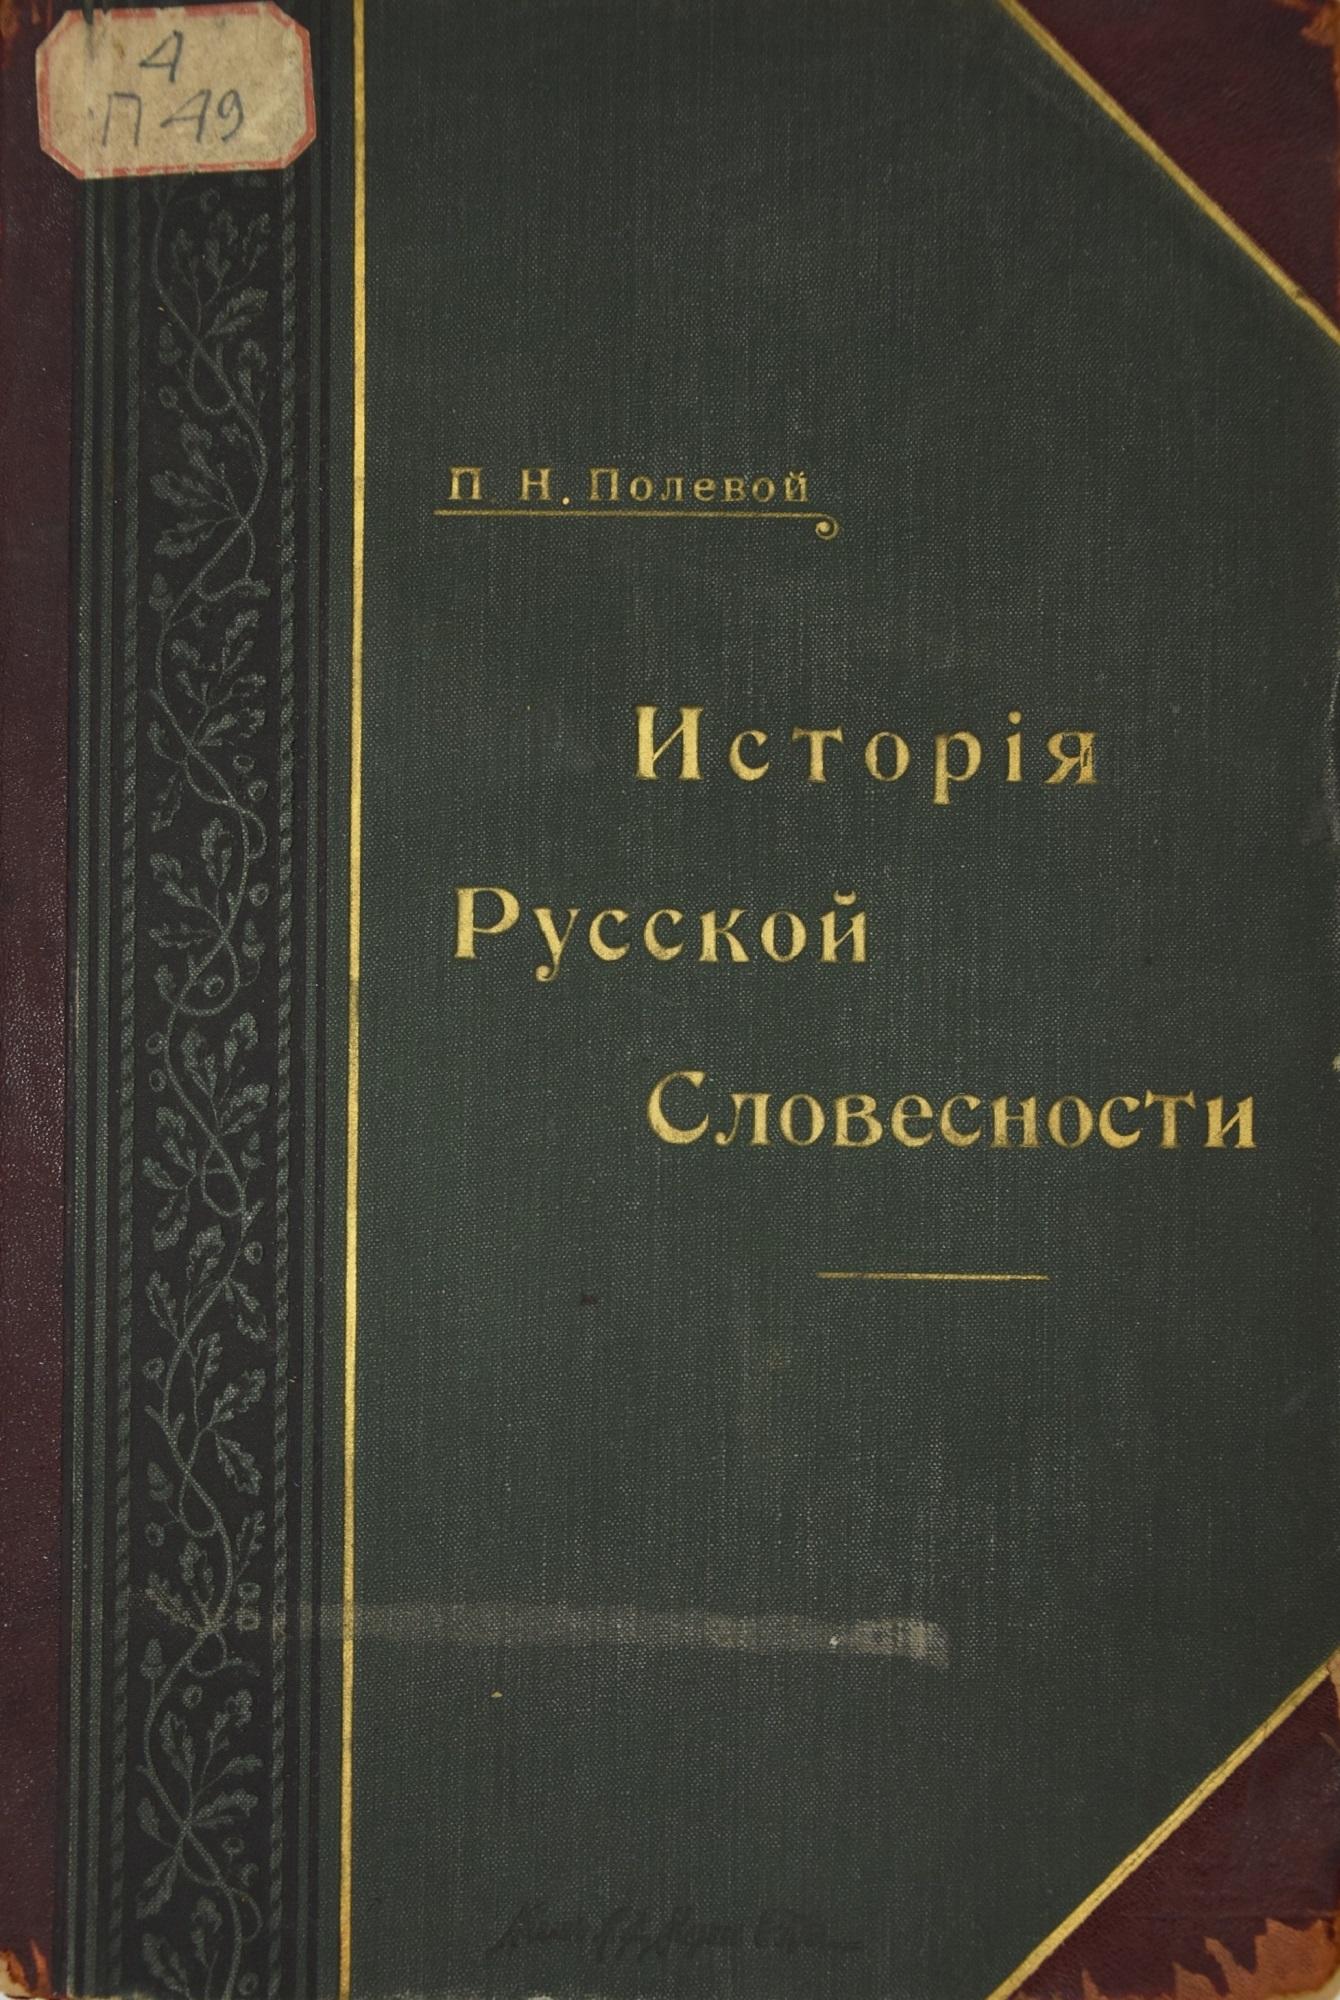 История русской словесности